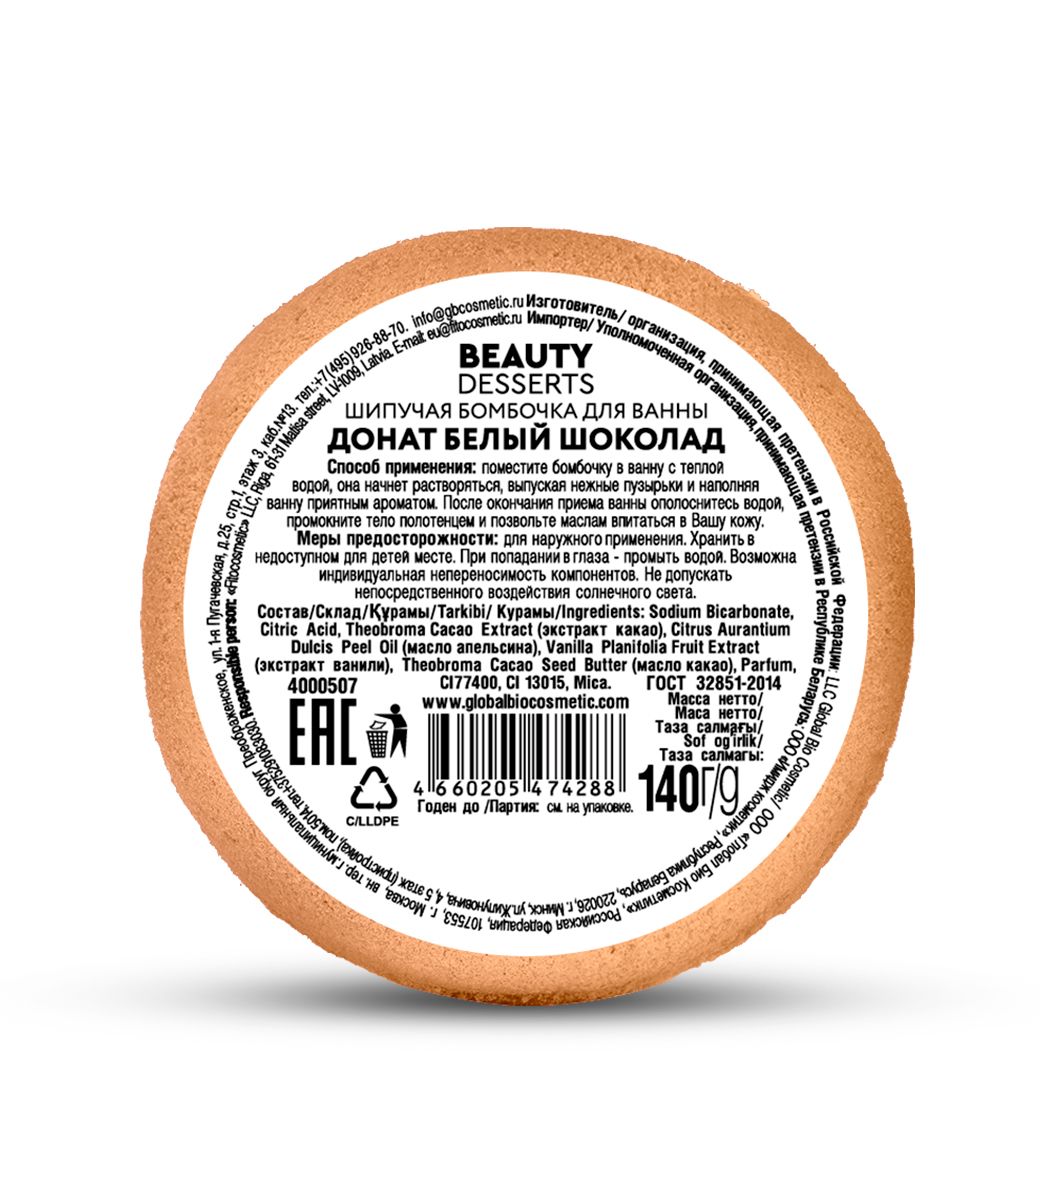 Шипучая бомбочка для ванны донат Белый шоколад Beauty Desserts 140г в Туле  — купить недорого по низкой цене в интернет аптеке AltaiMag